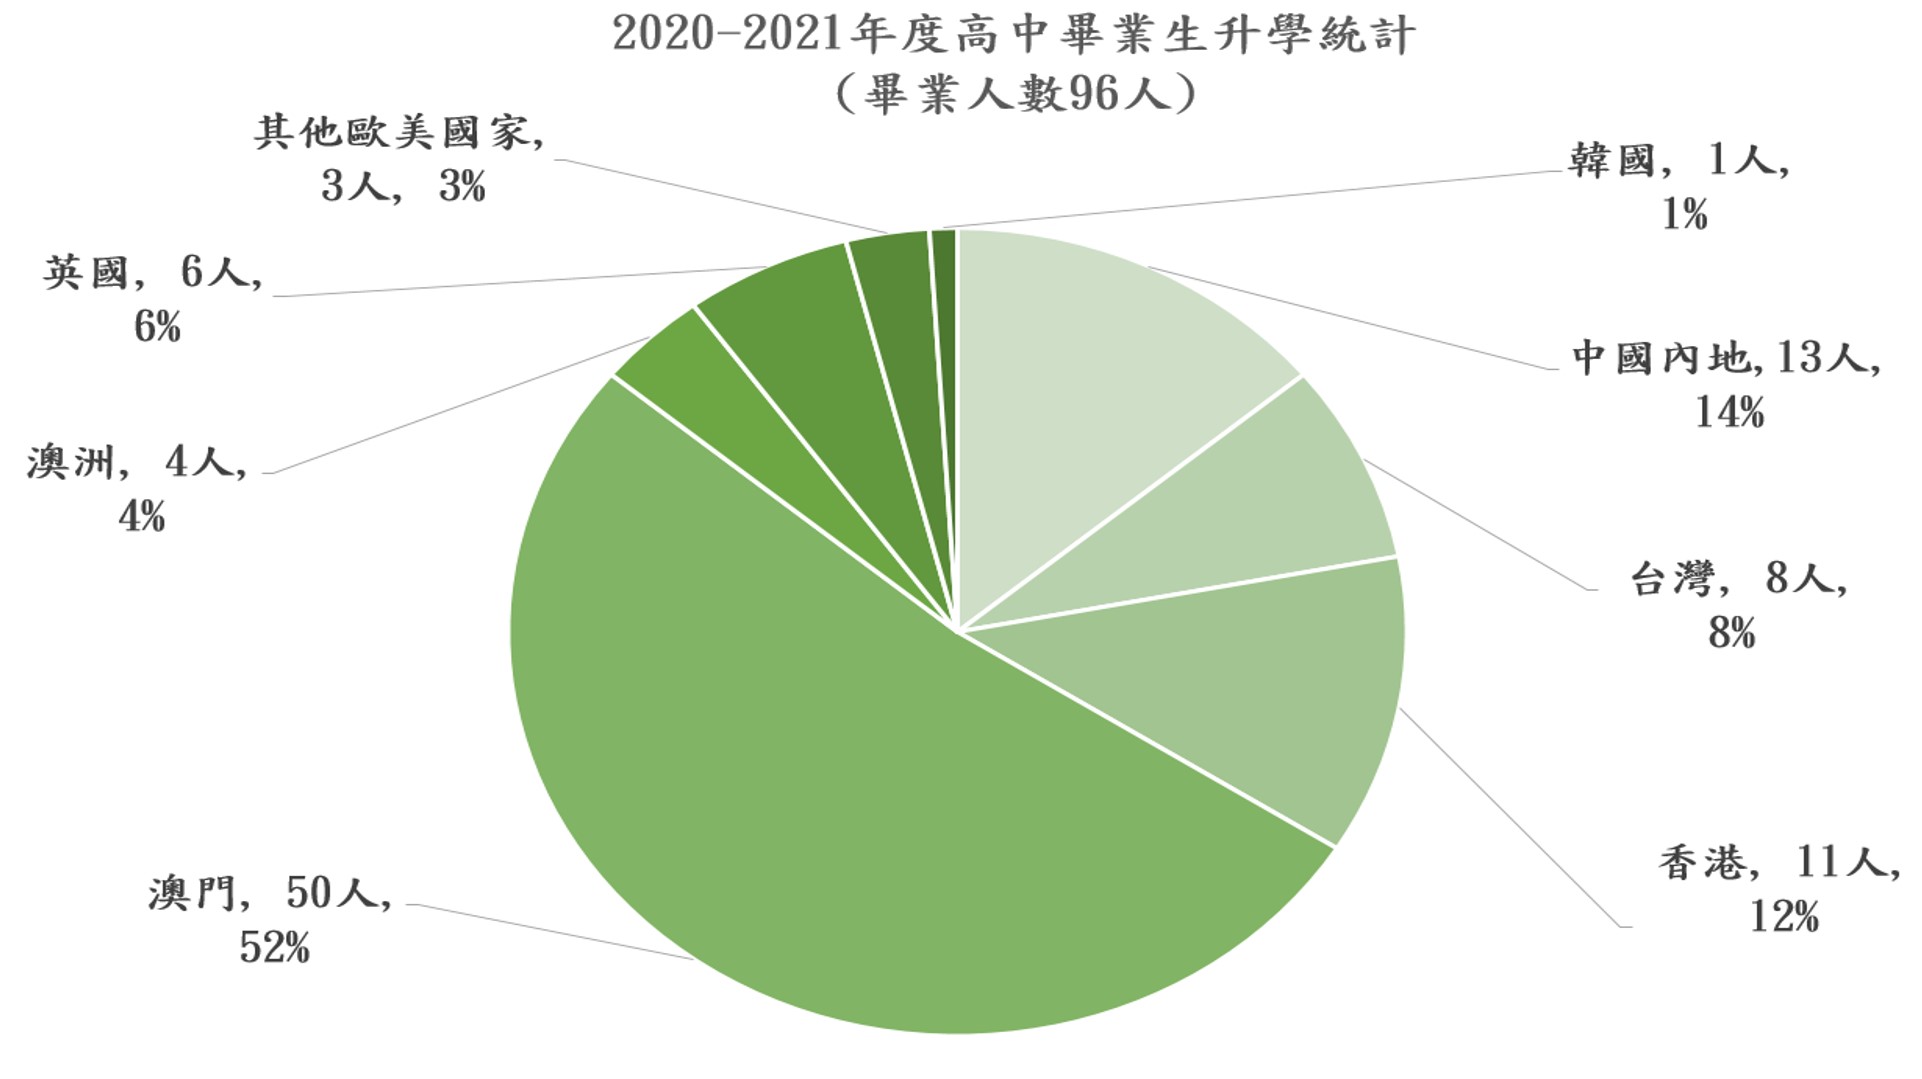 2020-2021年度升學統計圖2.jpg